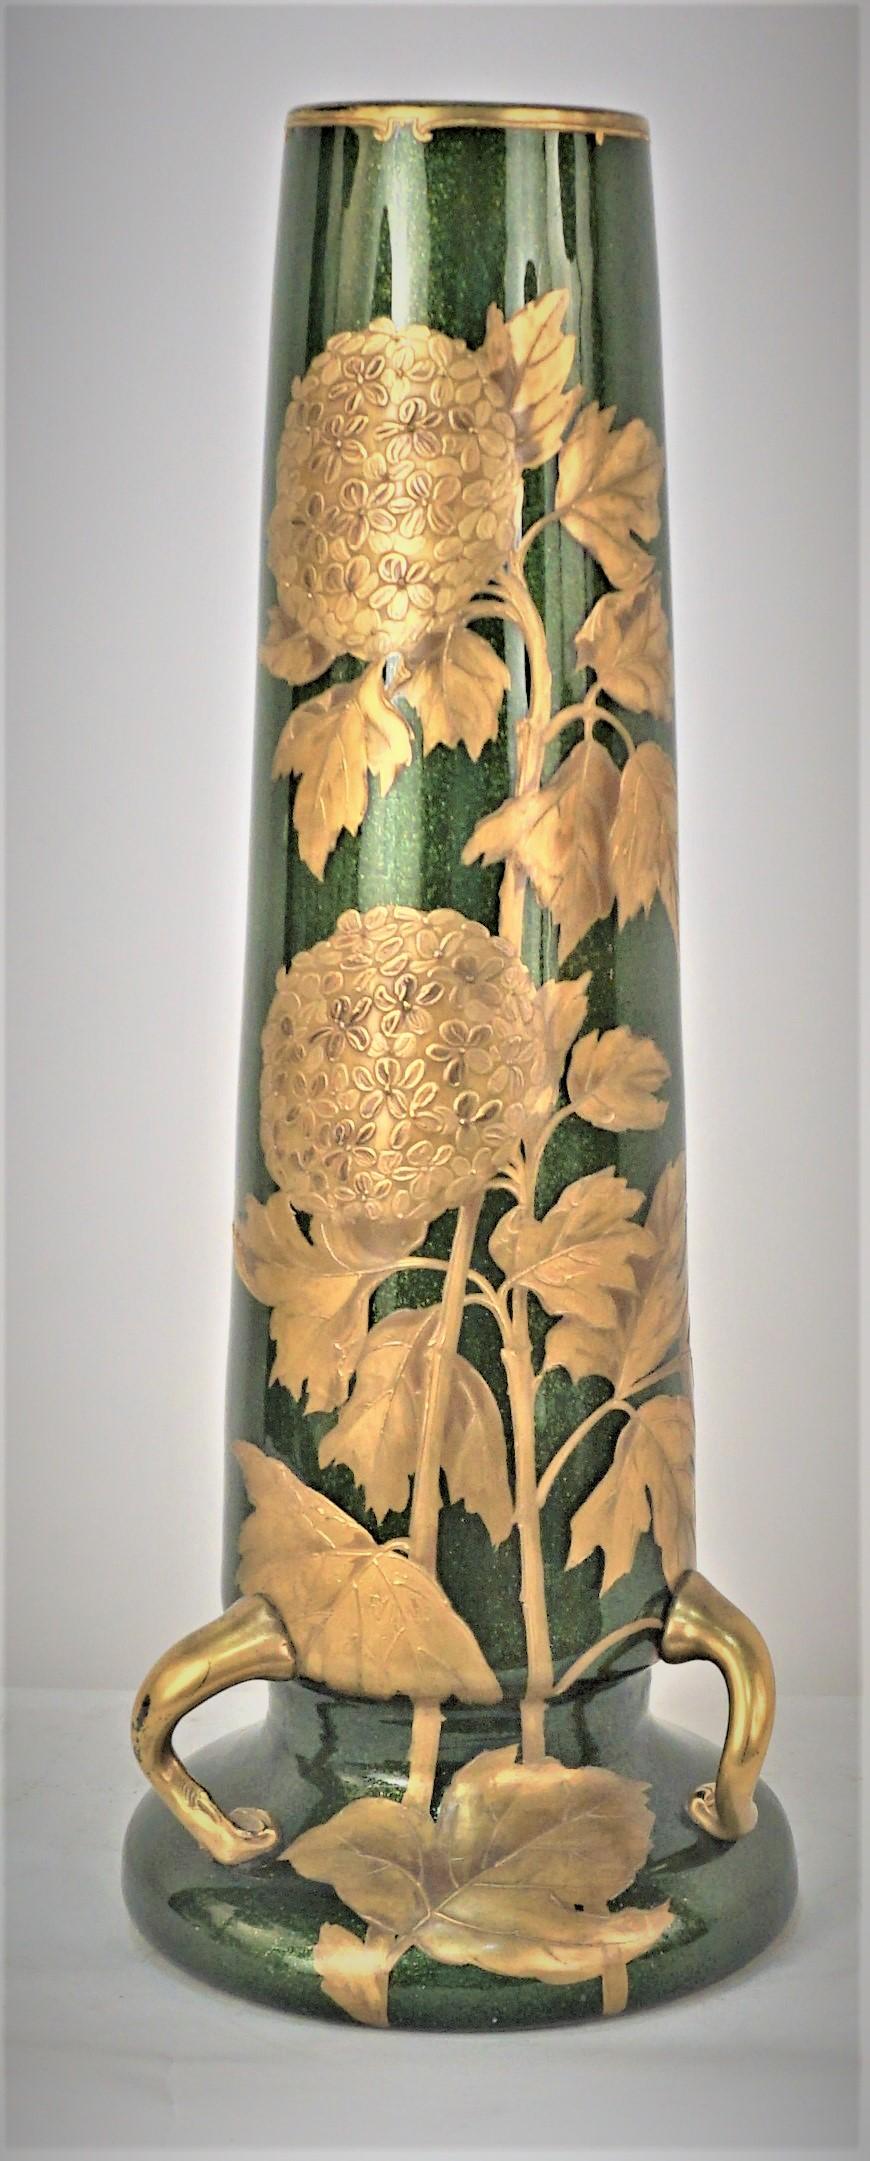 Grand vase art nouveau en verre soufflé peint à la main 